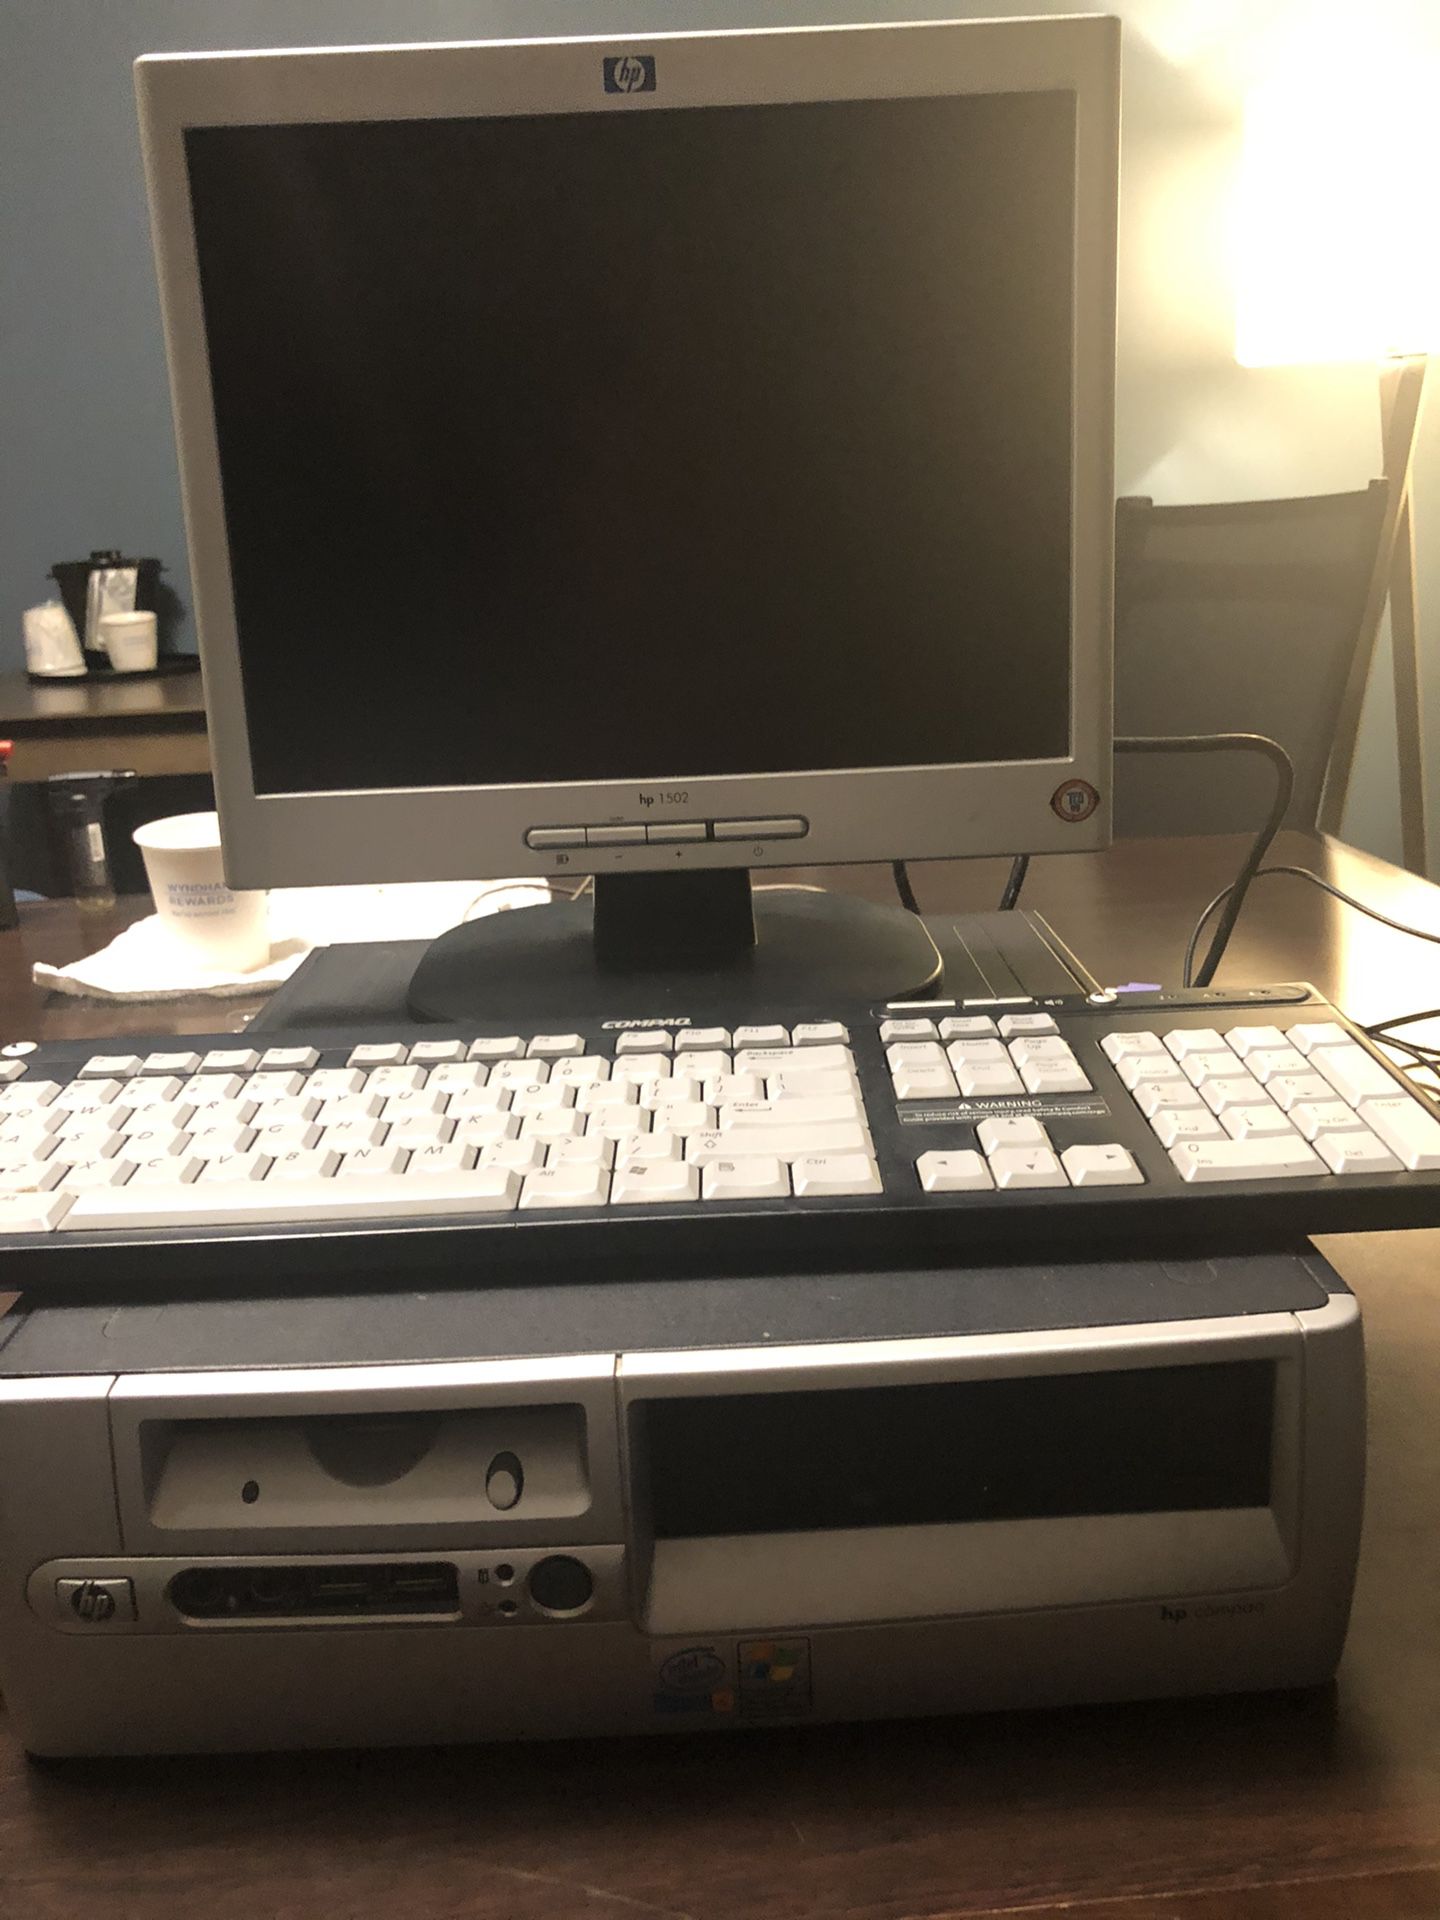 Computer, monitor and keyboard